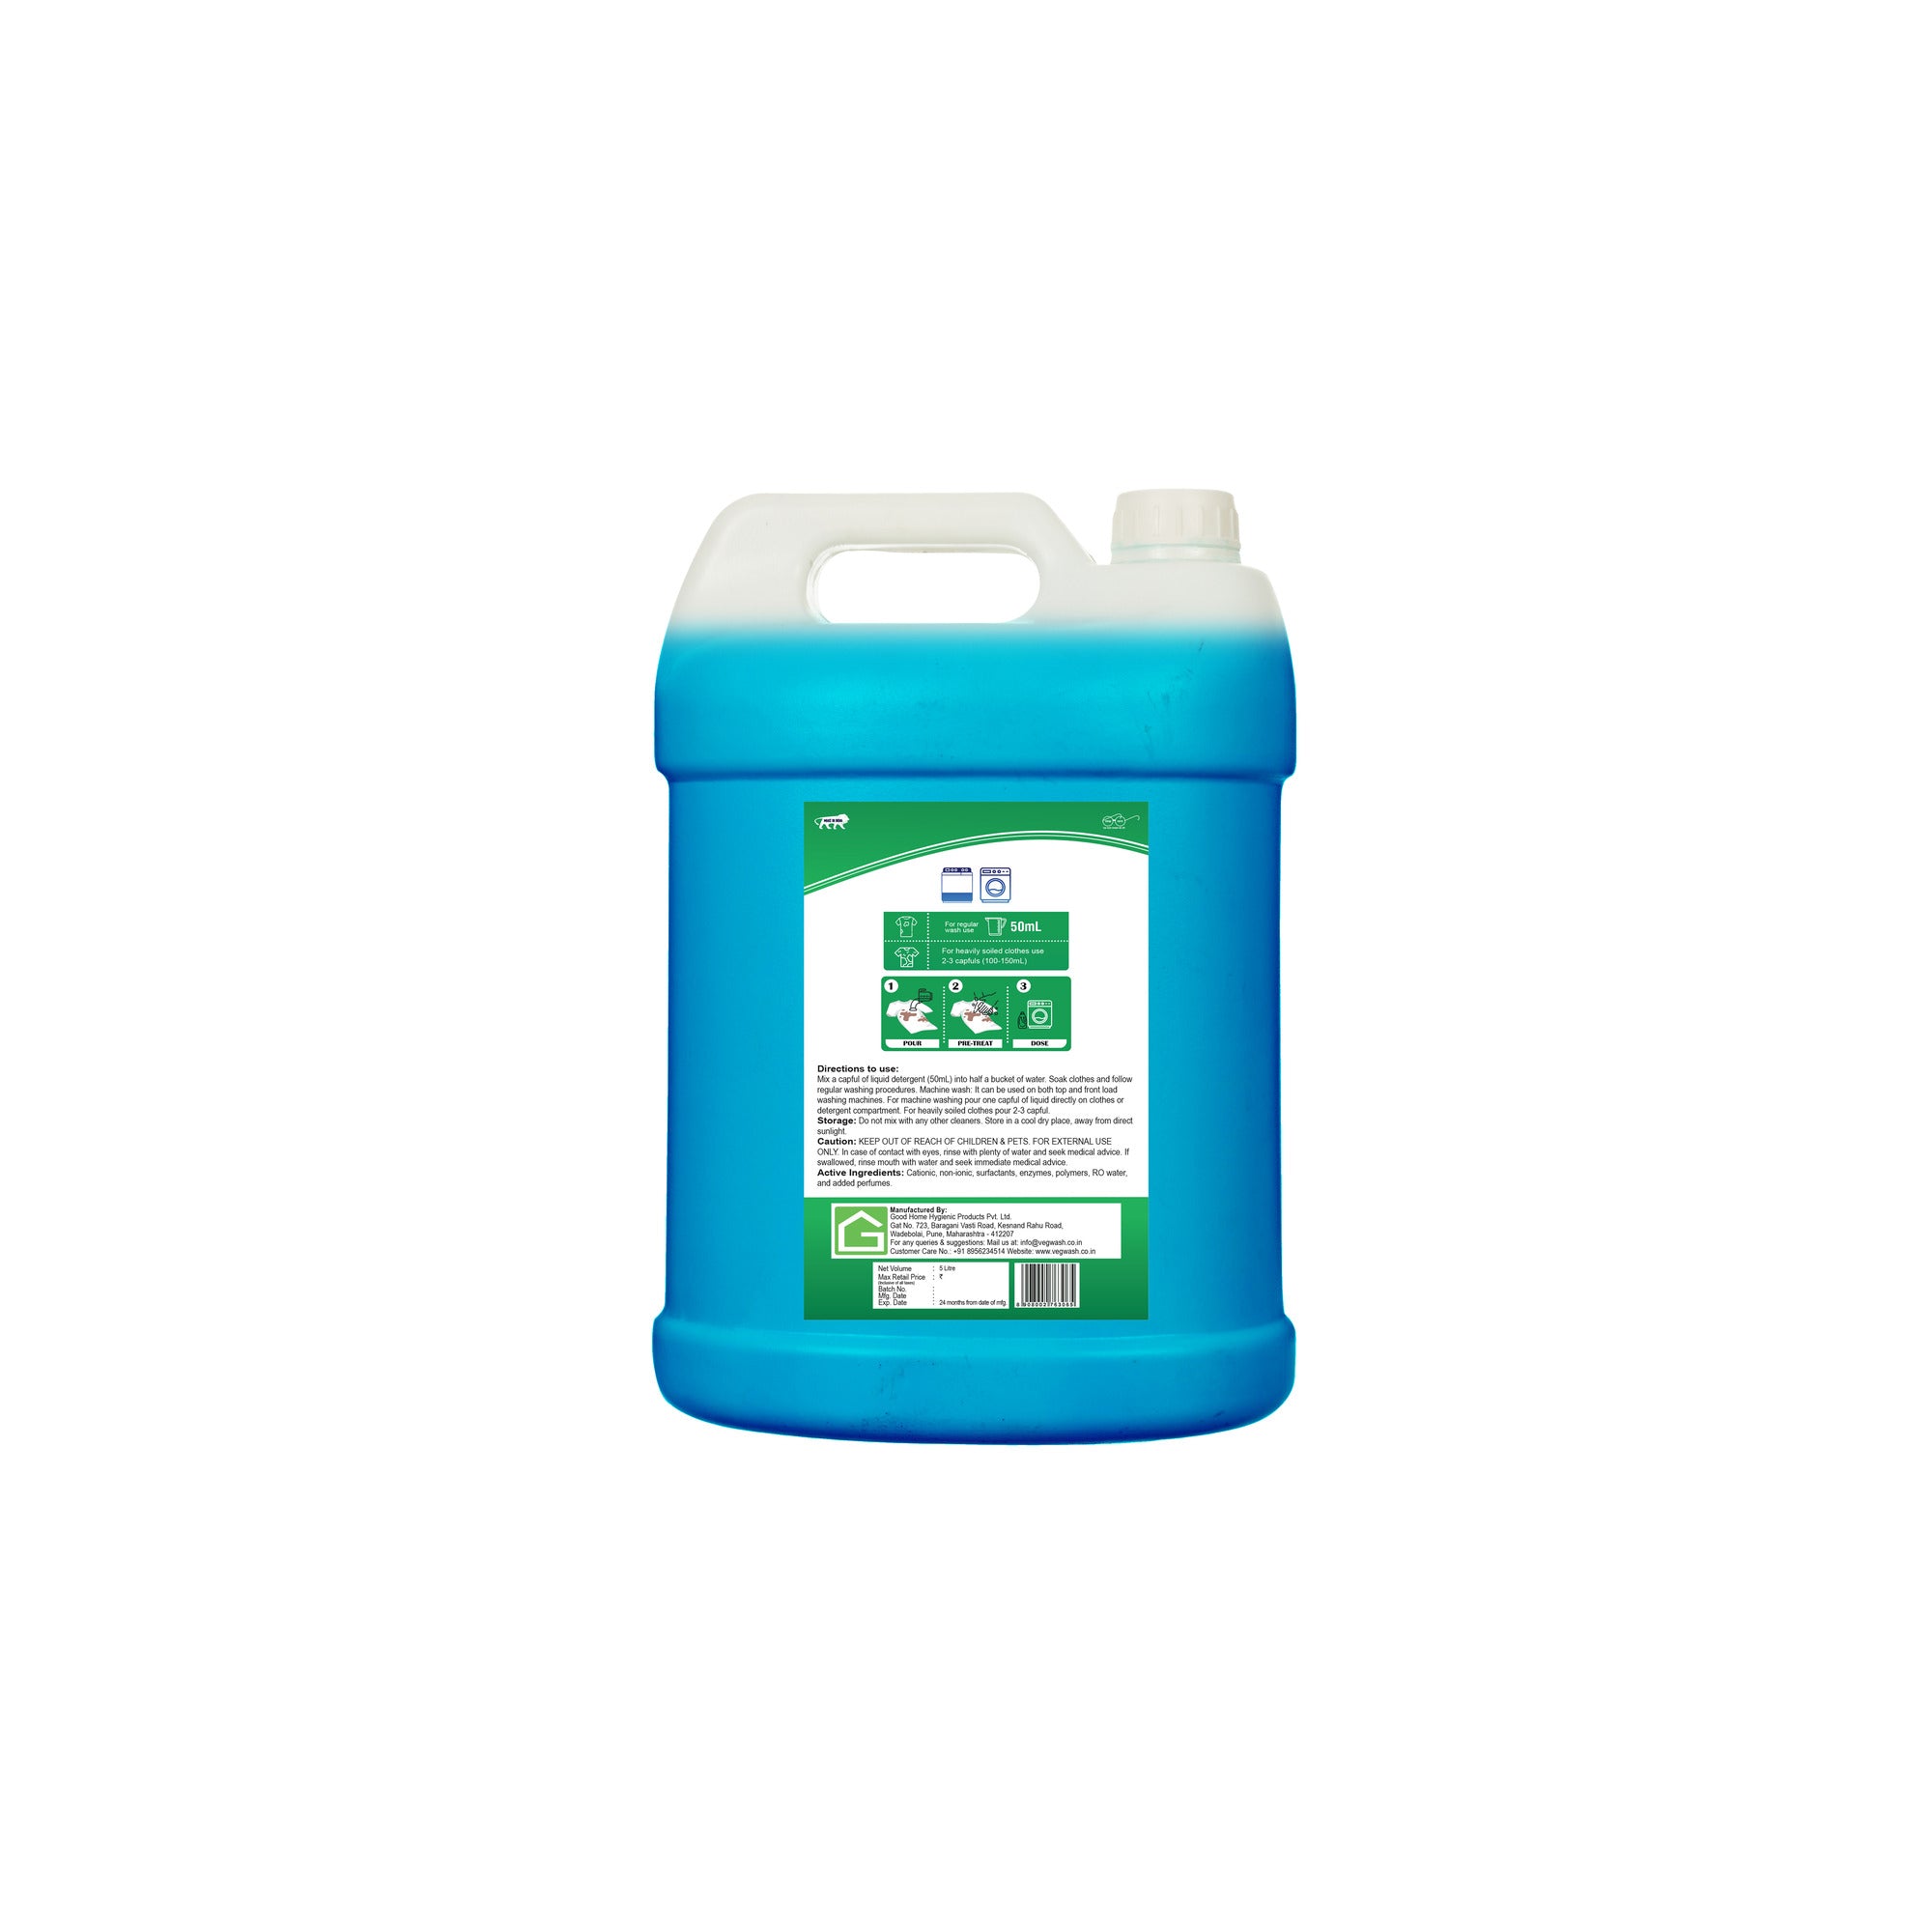 Bacnil Matic Liquid Detergent 5L